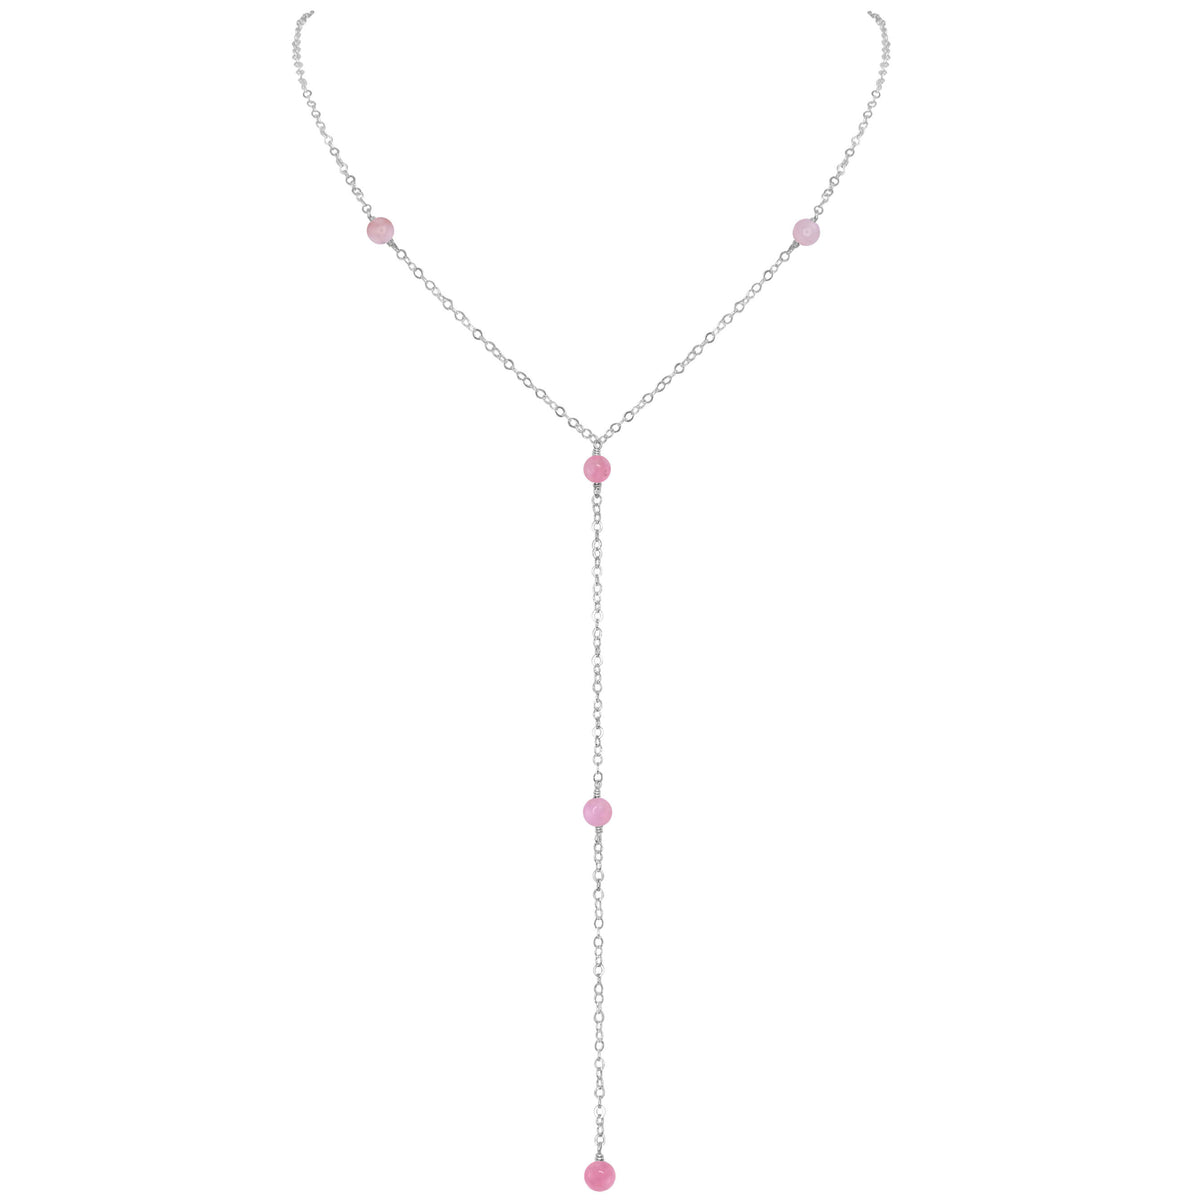 Dainty Y Necklace - Pink Peruvian Opal - Sterling Silver - Luna Tide Handmade Jewellery